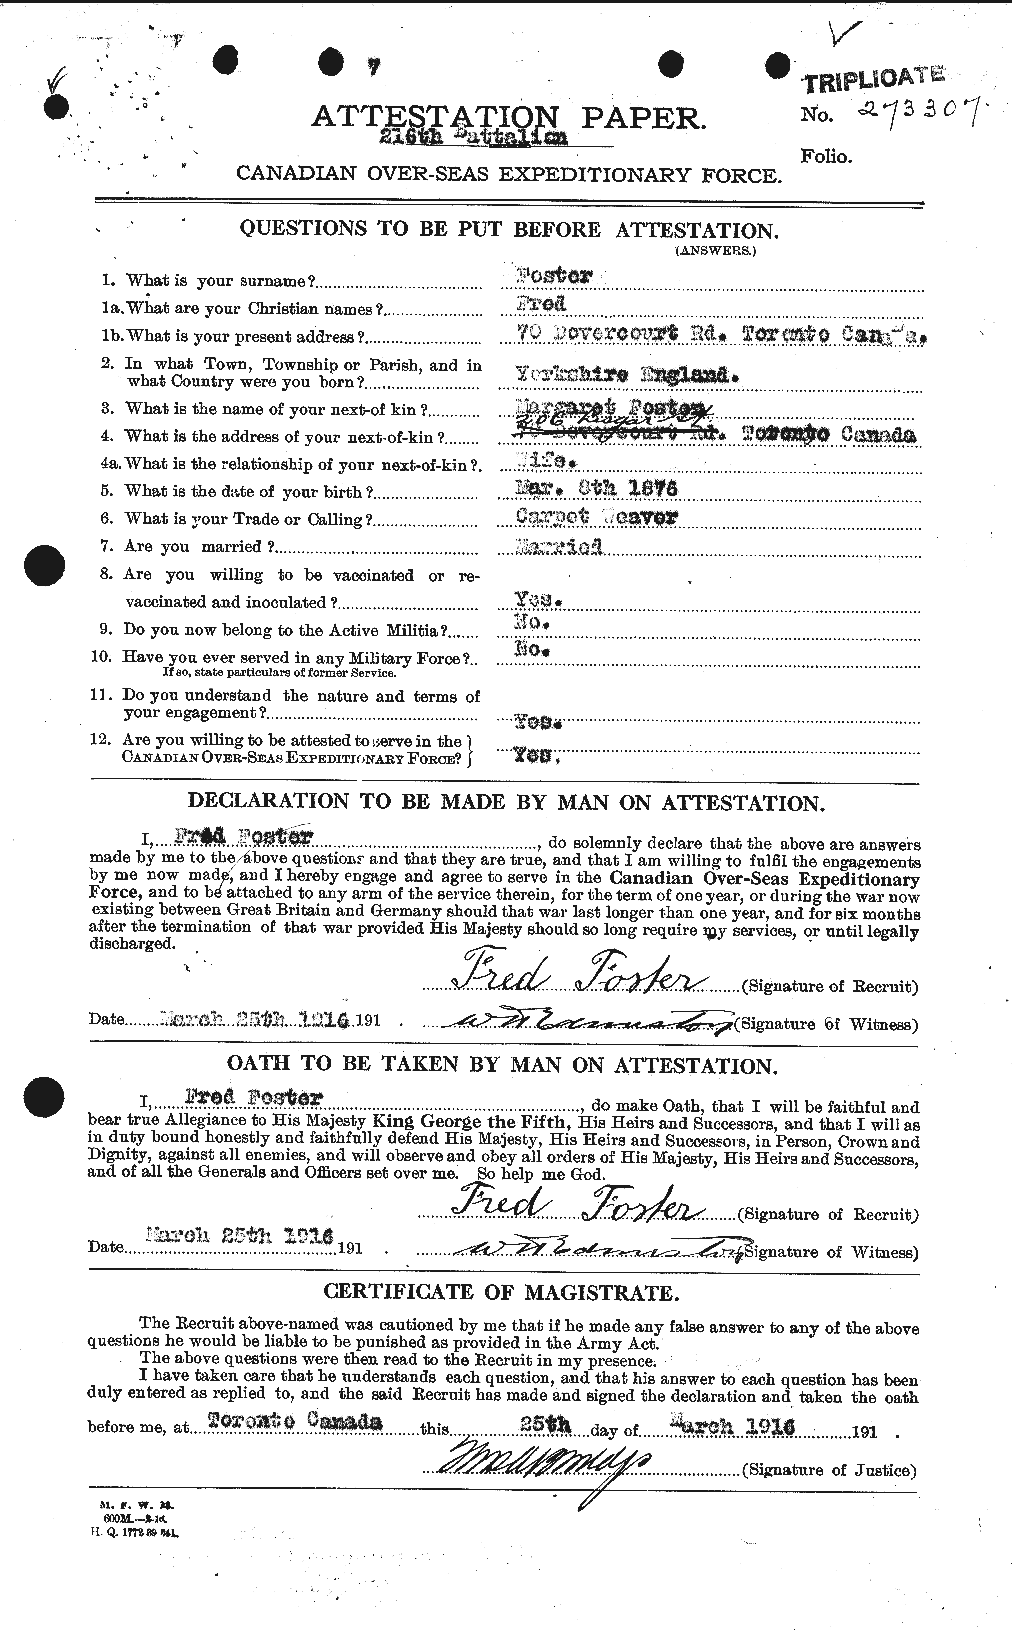 Dossiers du Personnel de la Première Guerre mondiale - CEC 330636a